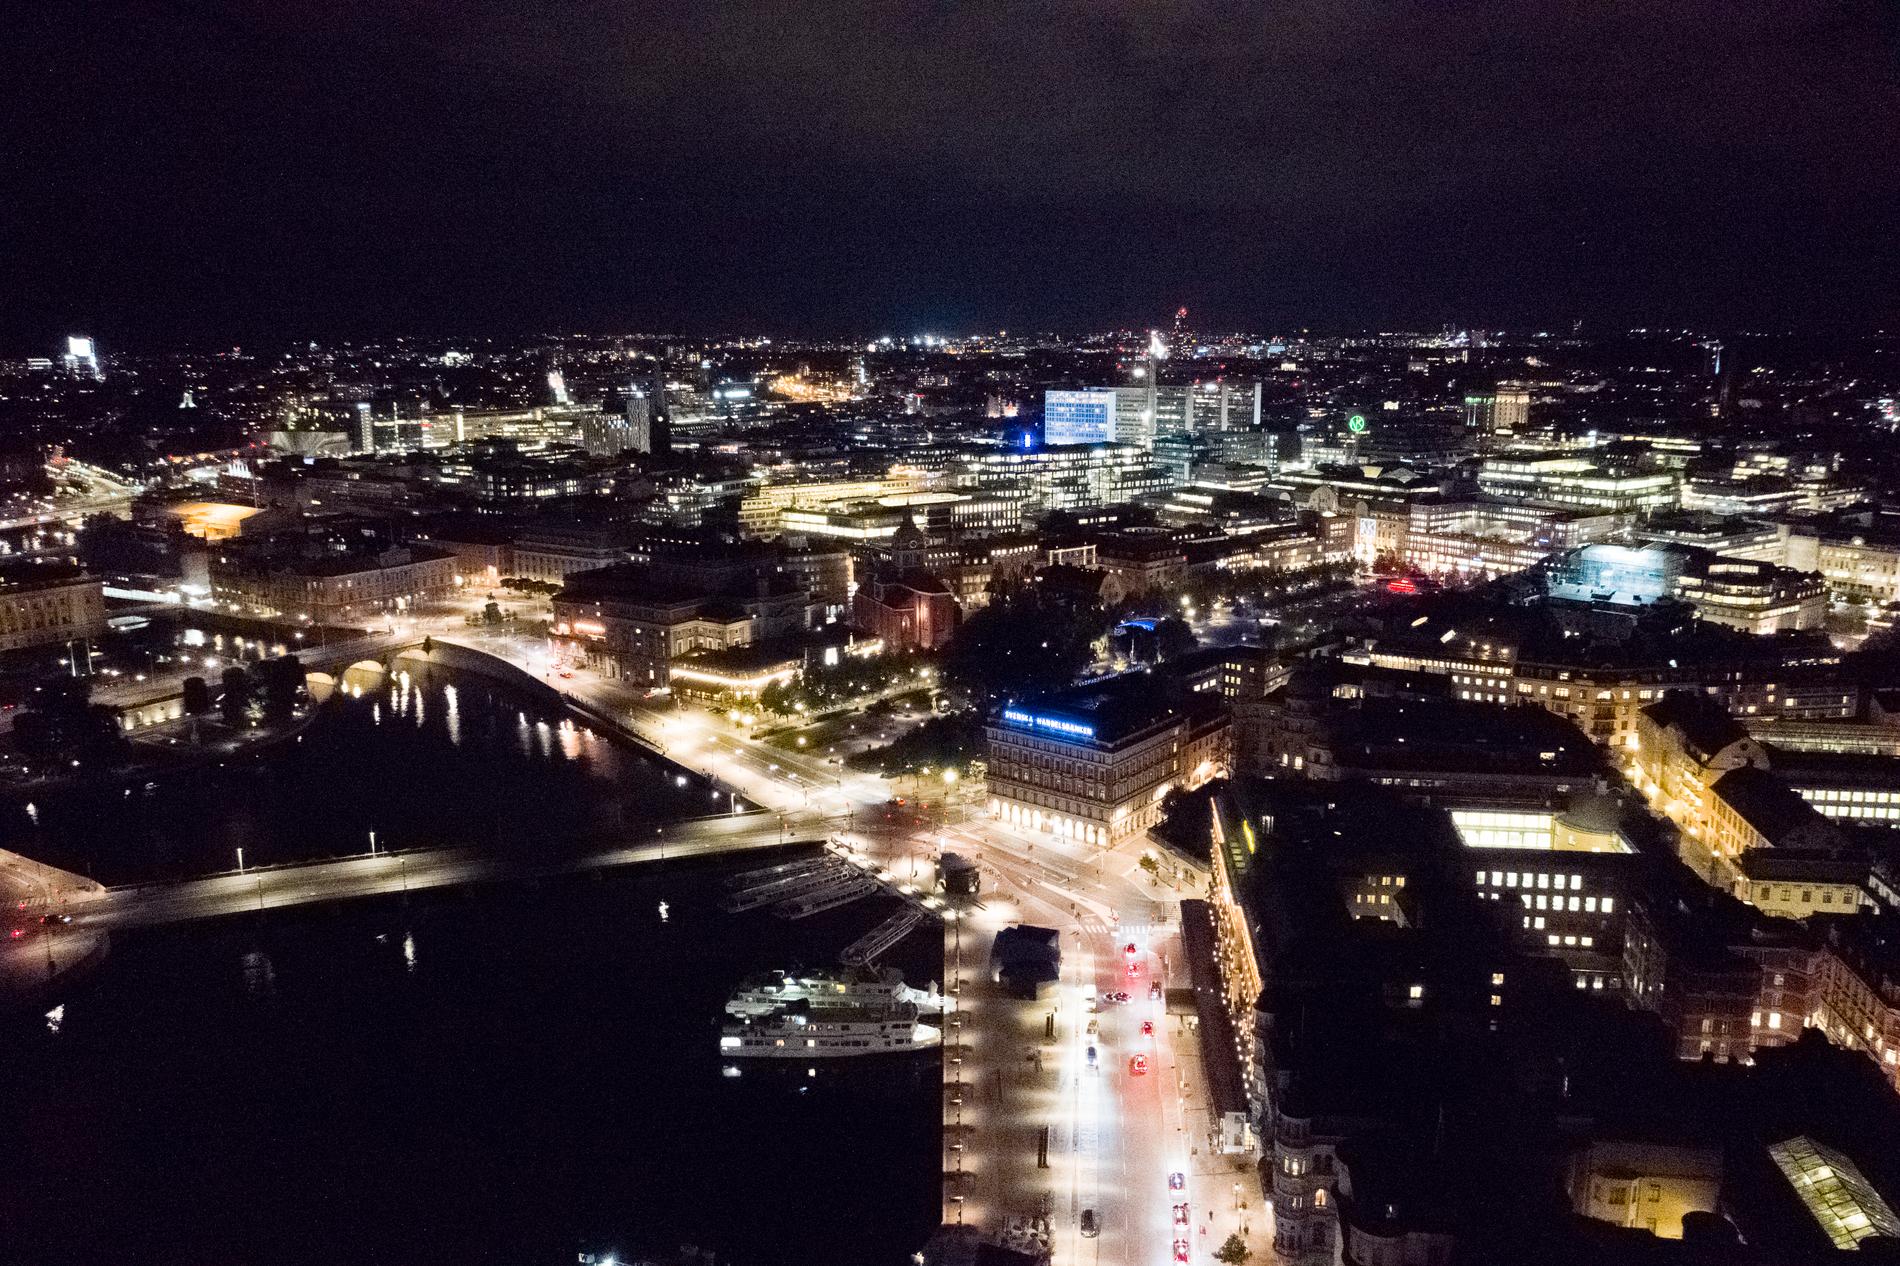 Städers nattbelysning hjälper forskare att beräkna hur mycket energi som används i olika regioner, och vilken uppvärmning detta leder till. Här ses Stockholms city, med Strömkajen och Grand Hotel i förgrunden. Arkivbild.